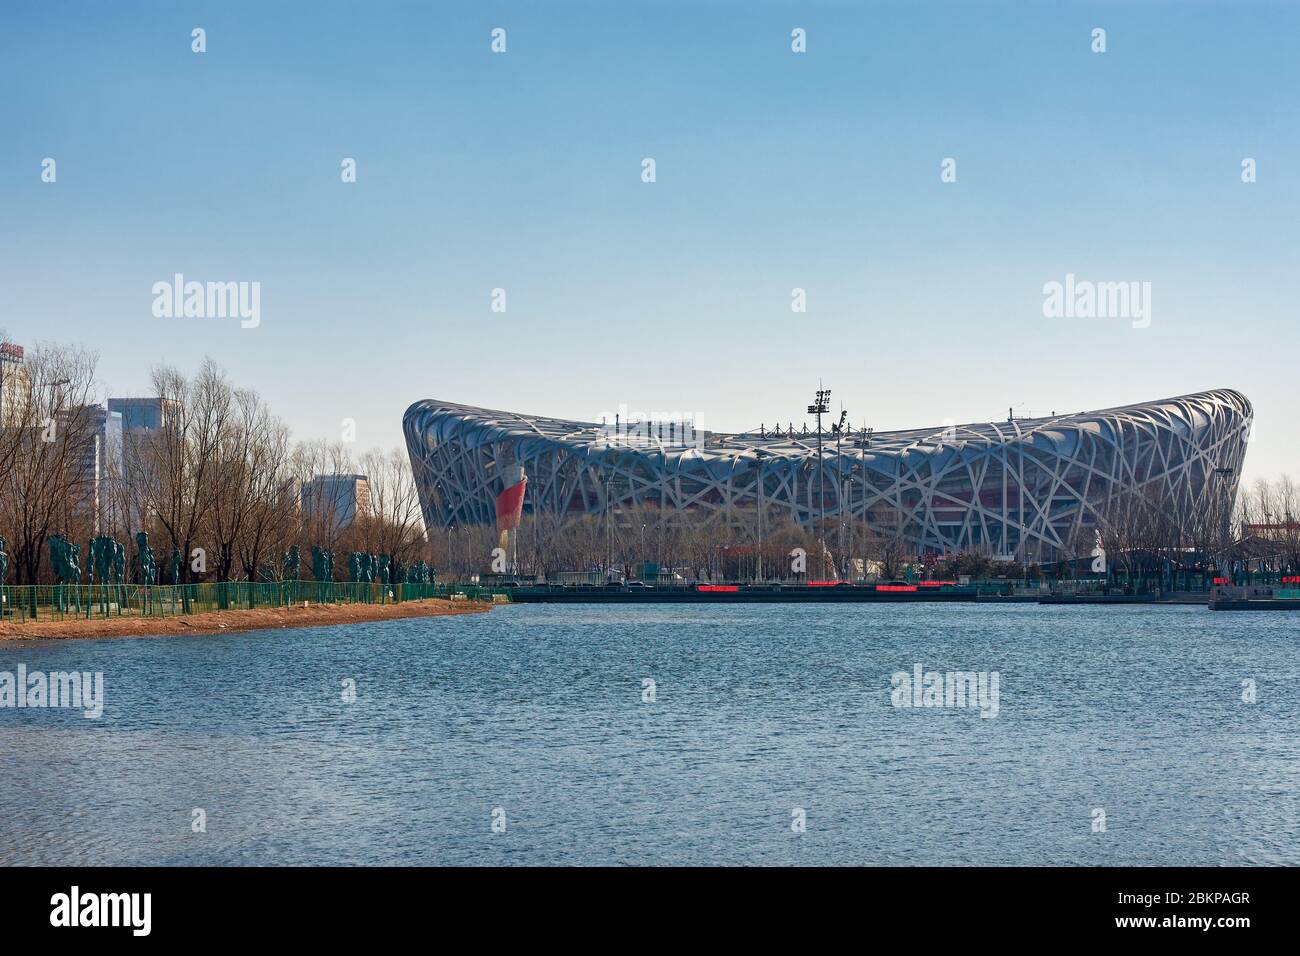 Pechino / Cina - 20 febbraio 2016: Stadio nazionale di Pechino (il Nido degli Uccelli), sede dei Giochi olimpici estivi di Pechino 2008 (XXIX Olympiad) Foto Stock